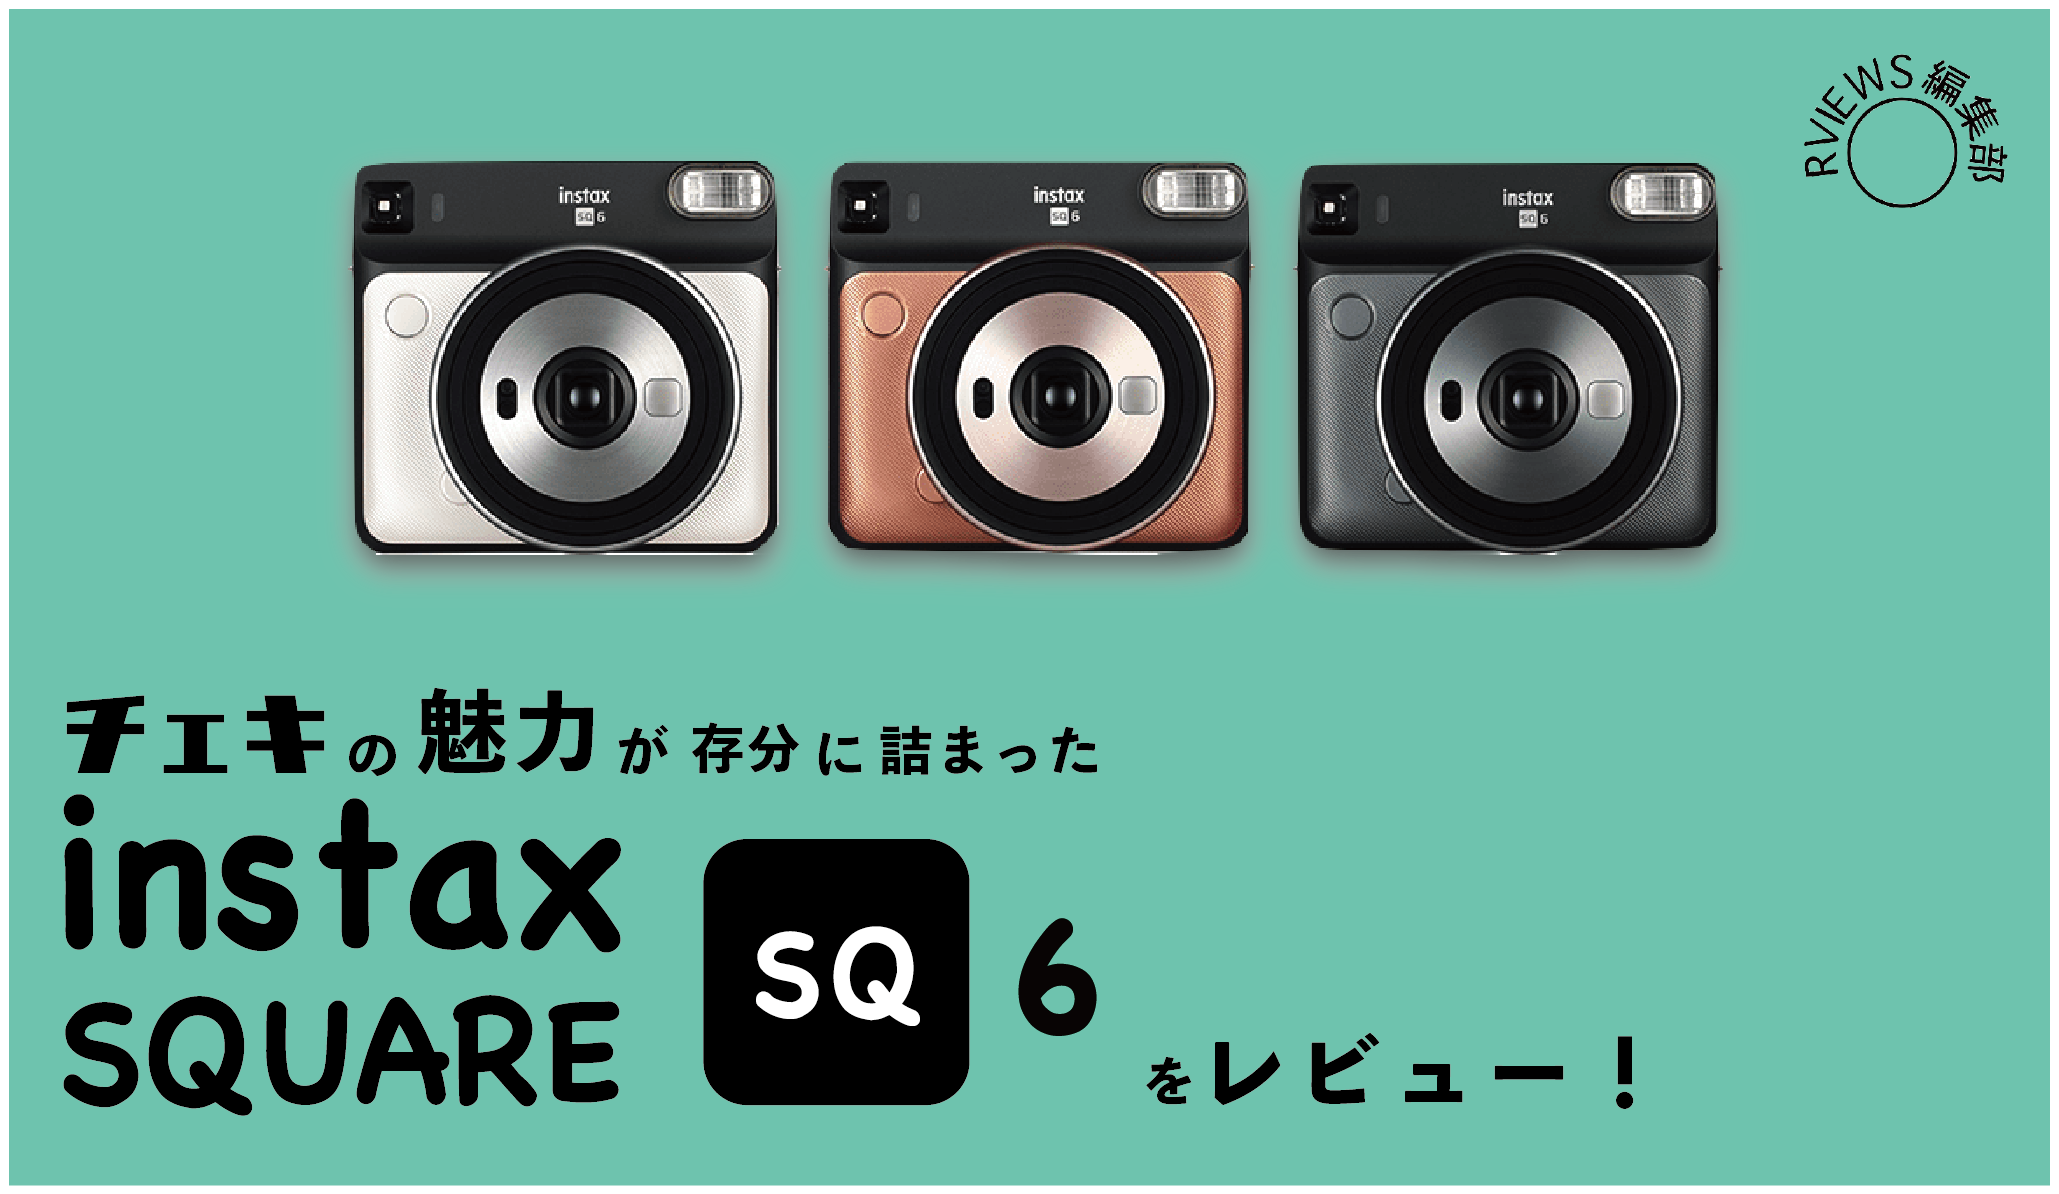 【メール便送料無料対応可】 【セット売り】INSTAX パールホワイト 6 SQ SQUARE フィルムカメラ